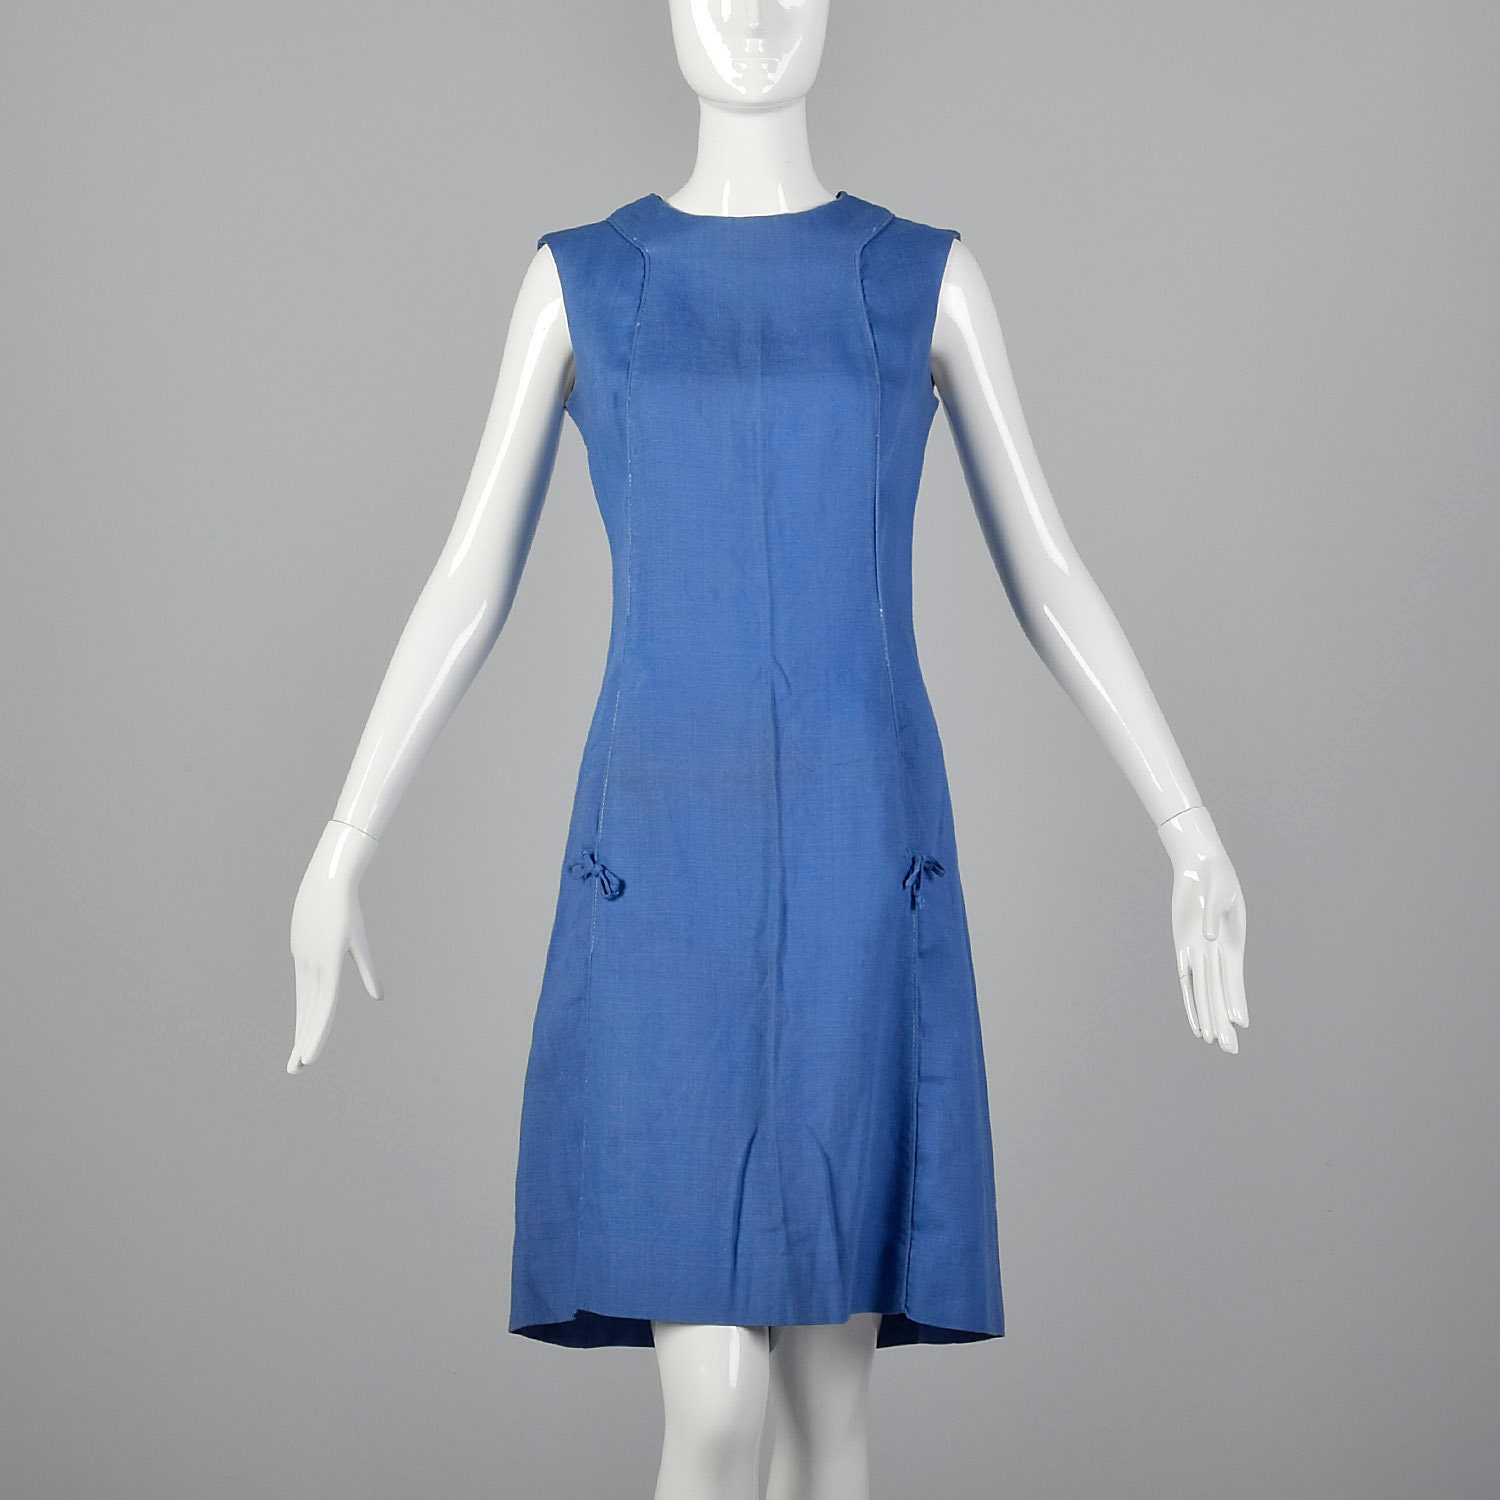 XS 1960s Dress Blue Shift Dress Summer Lightweight Linen Feel - Etsy